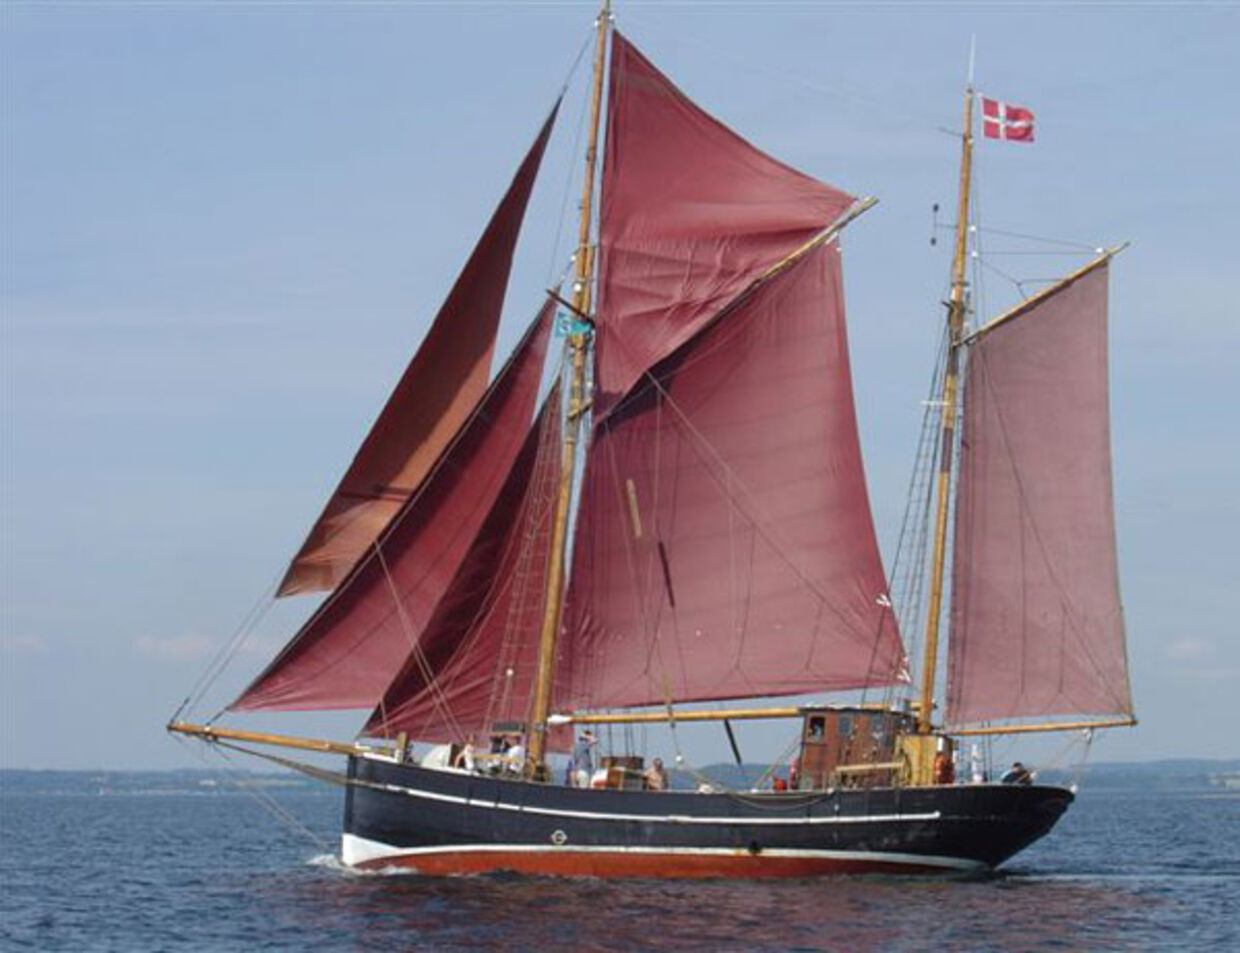 Det 16 meter langt skib, ved navn 'Silvermoon', der sejlede under dansk flag.